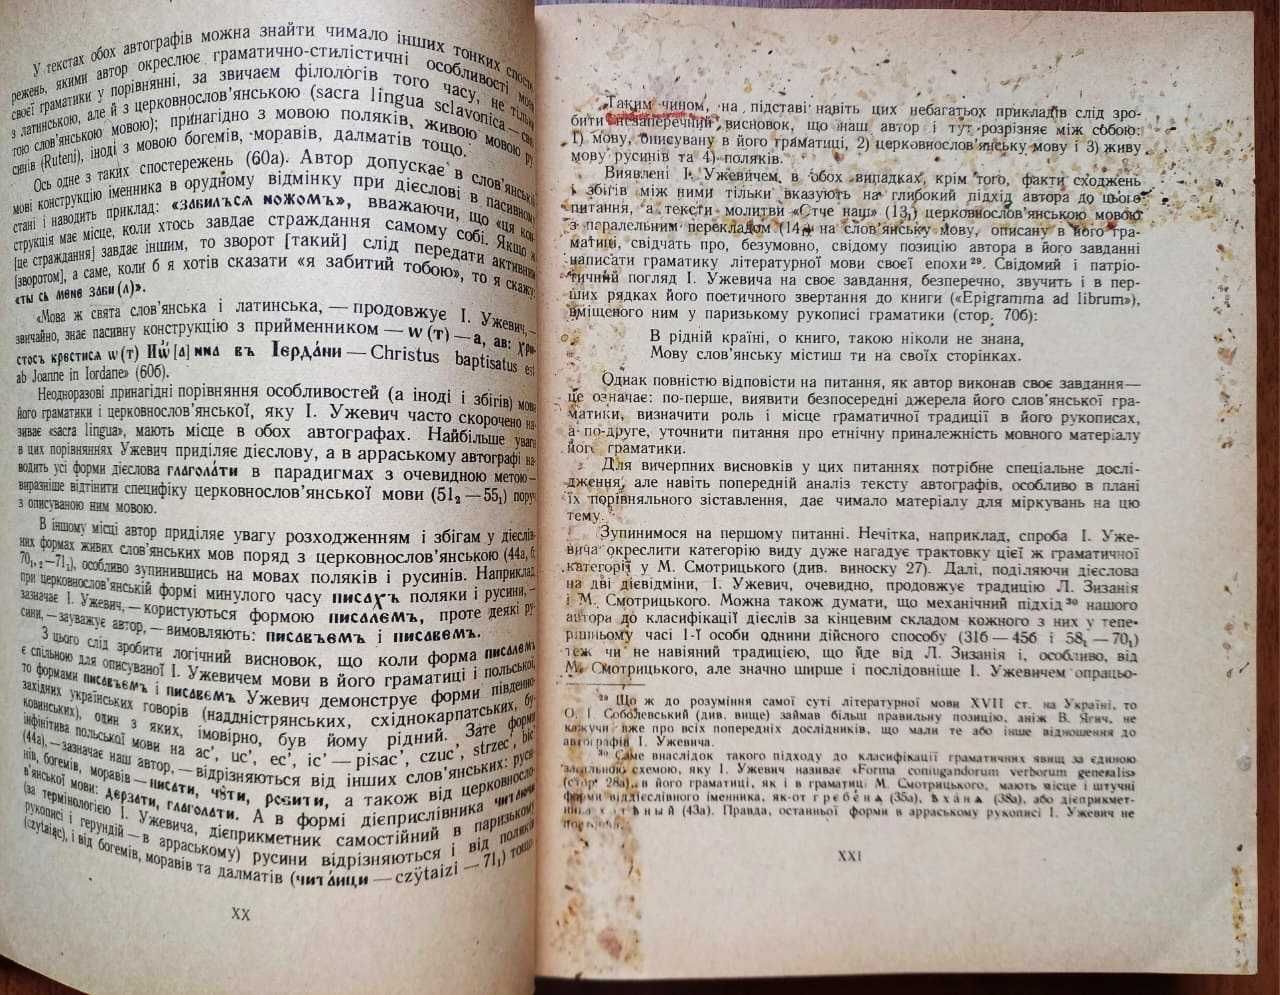 Граматика слов’янська І.Ужевича (Наукове видання 1970 року)